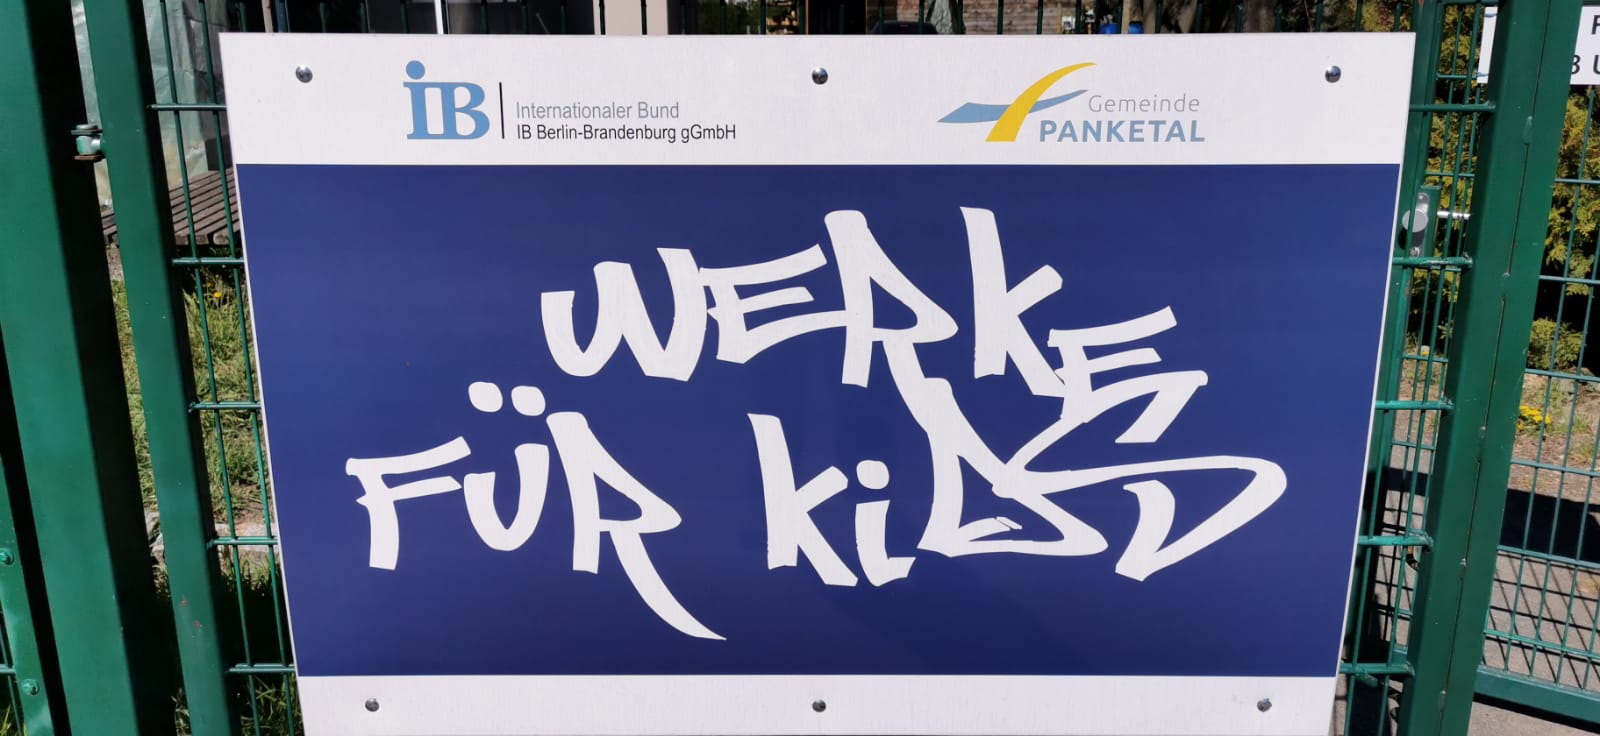 upload/IB Berlin-Brandenburg/BBNO/Bernau/Werke für kids/Schild Werke.jpg